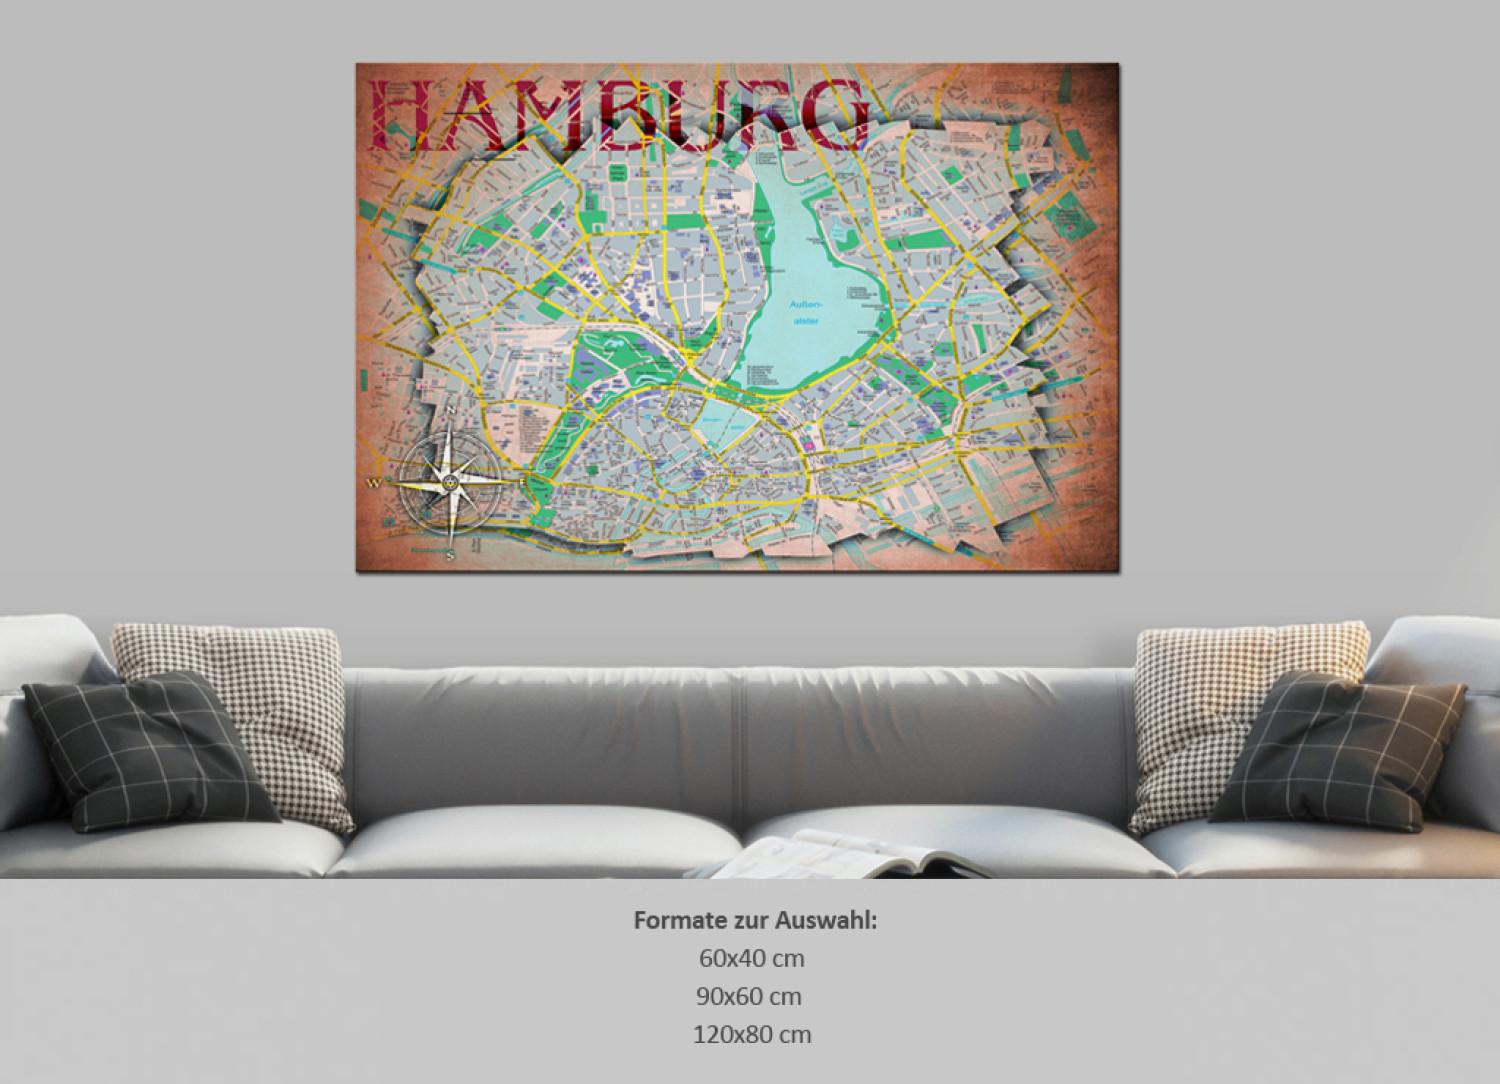 Tablero decorativo en corcho Hamburg [Cork Map]